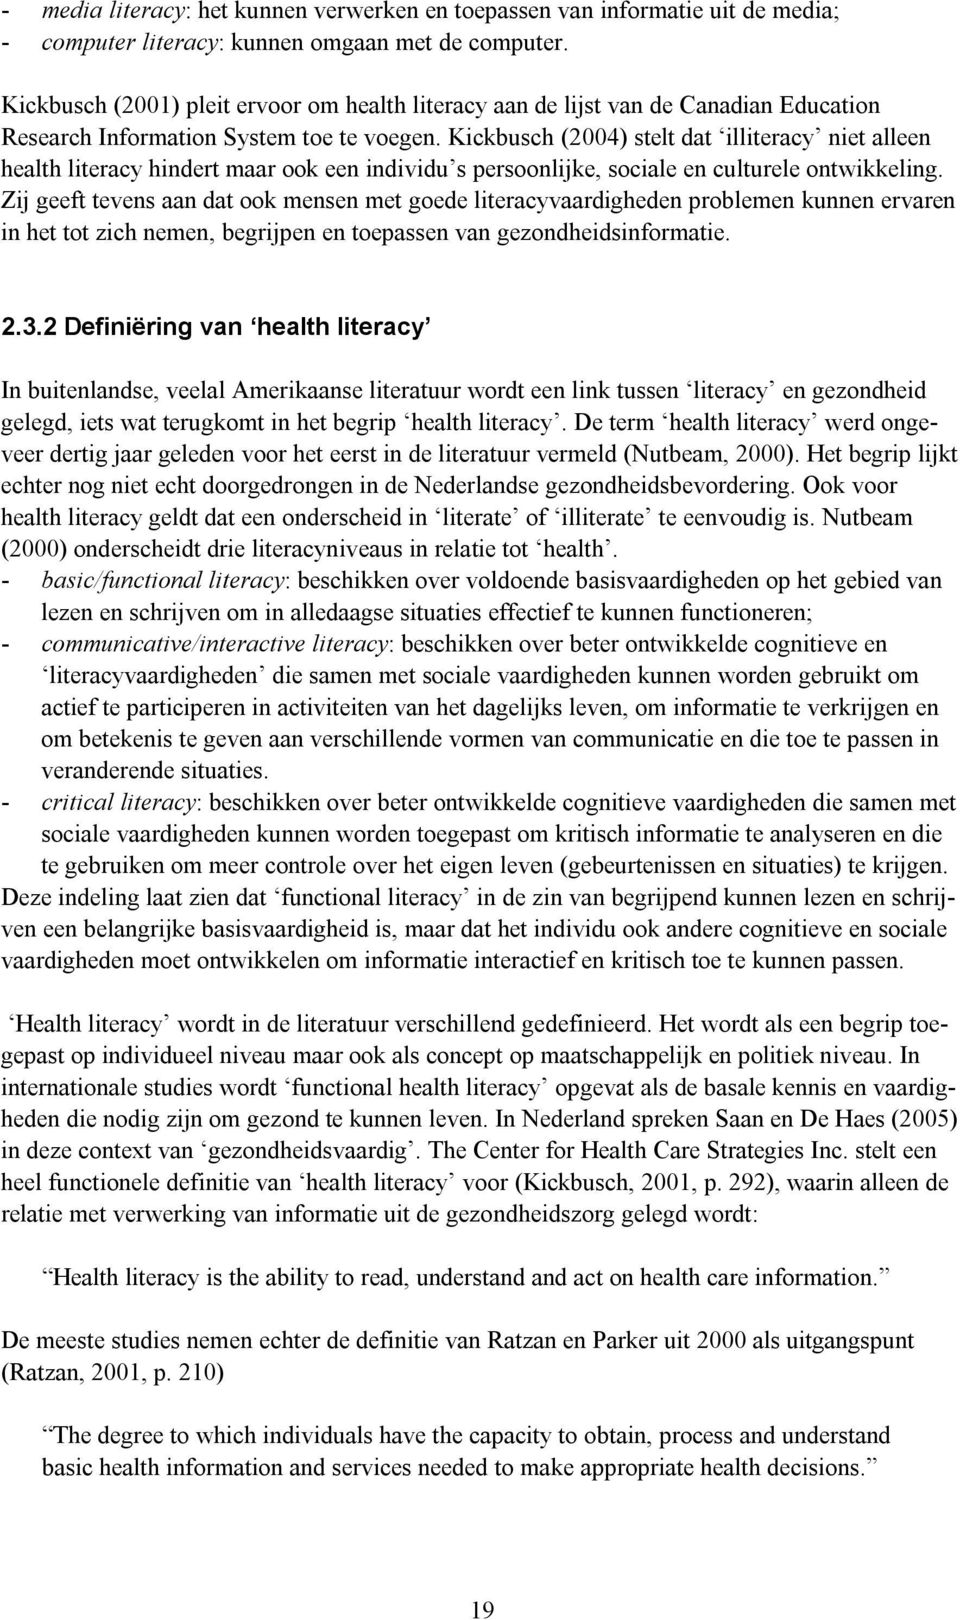 Kickbusch (2004) stelt dat illiteracy niet alleen health literacy hindert maar ook een individu s persoonlijke, sociale en culturele ontwikkeling.